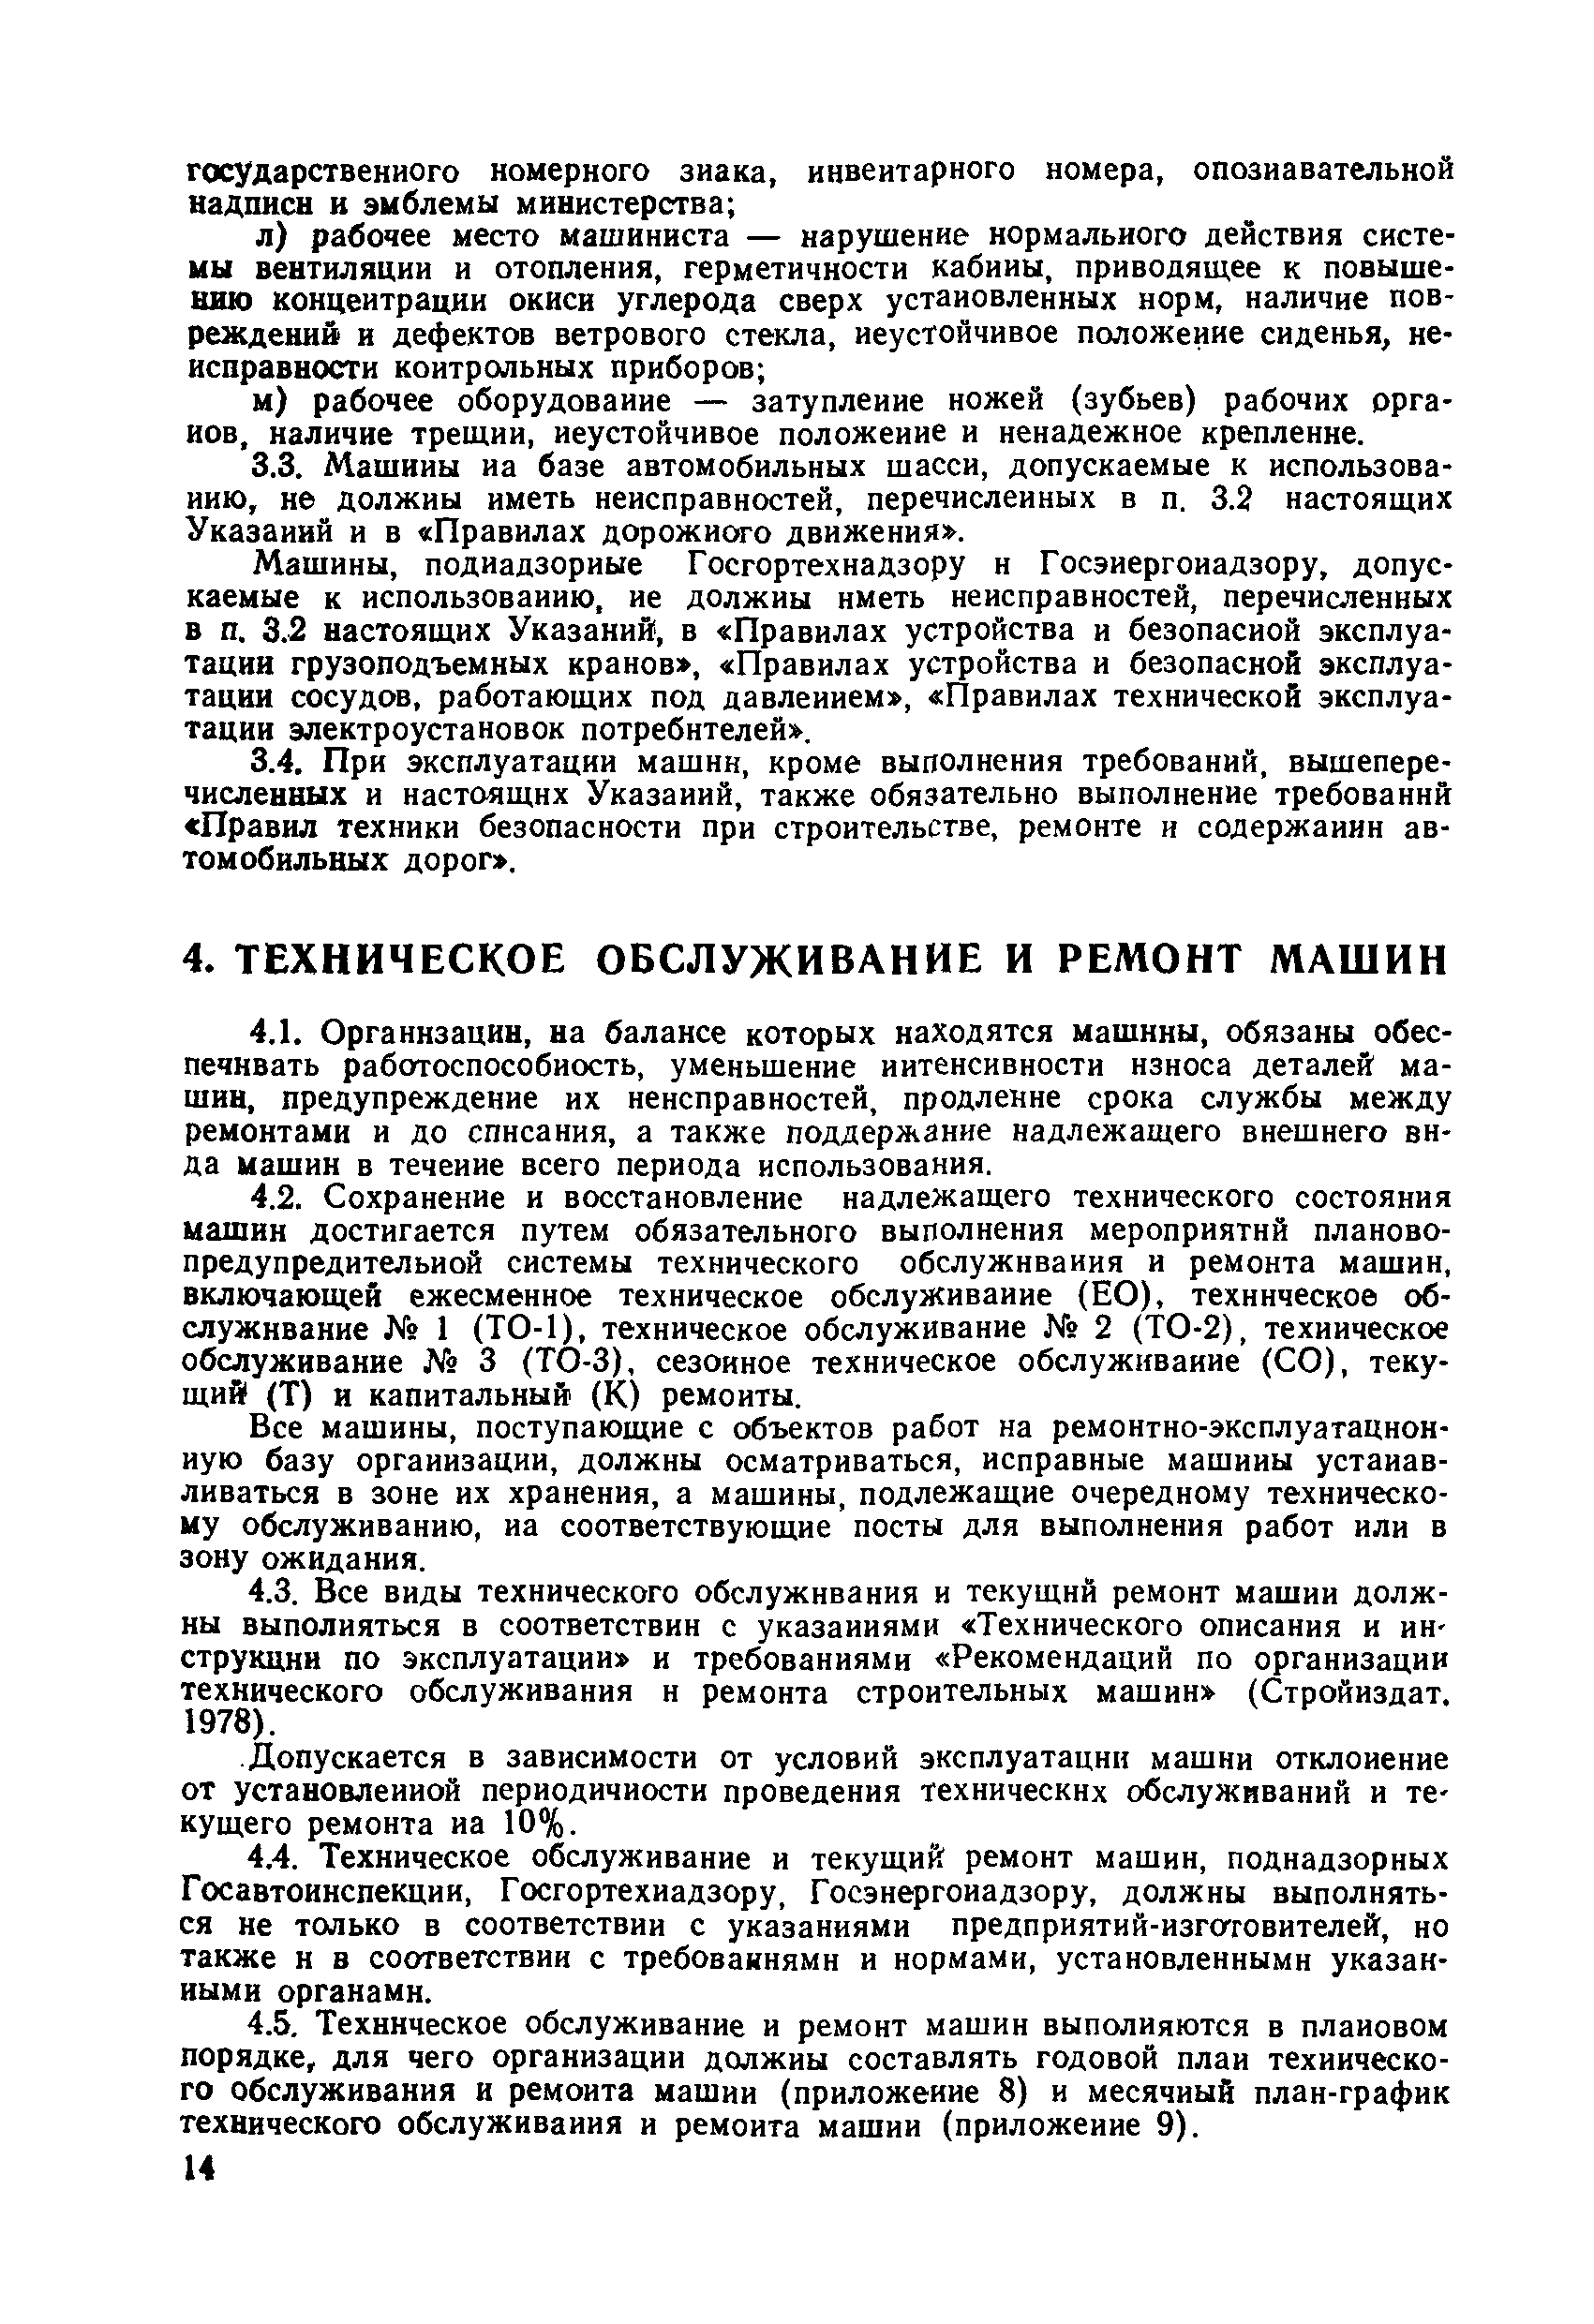 ВСН 36-79/Минавтодор РСФСР